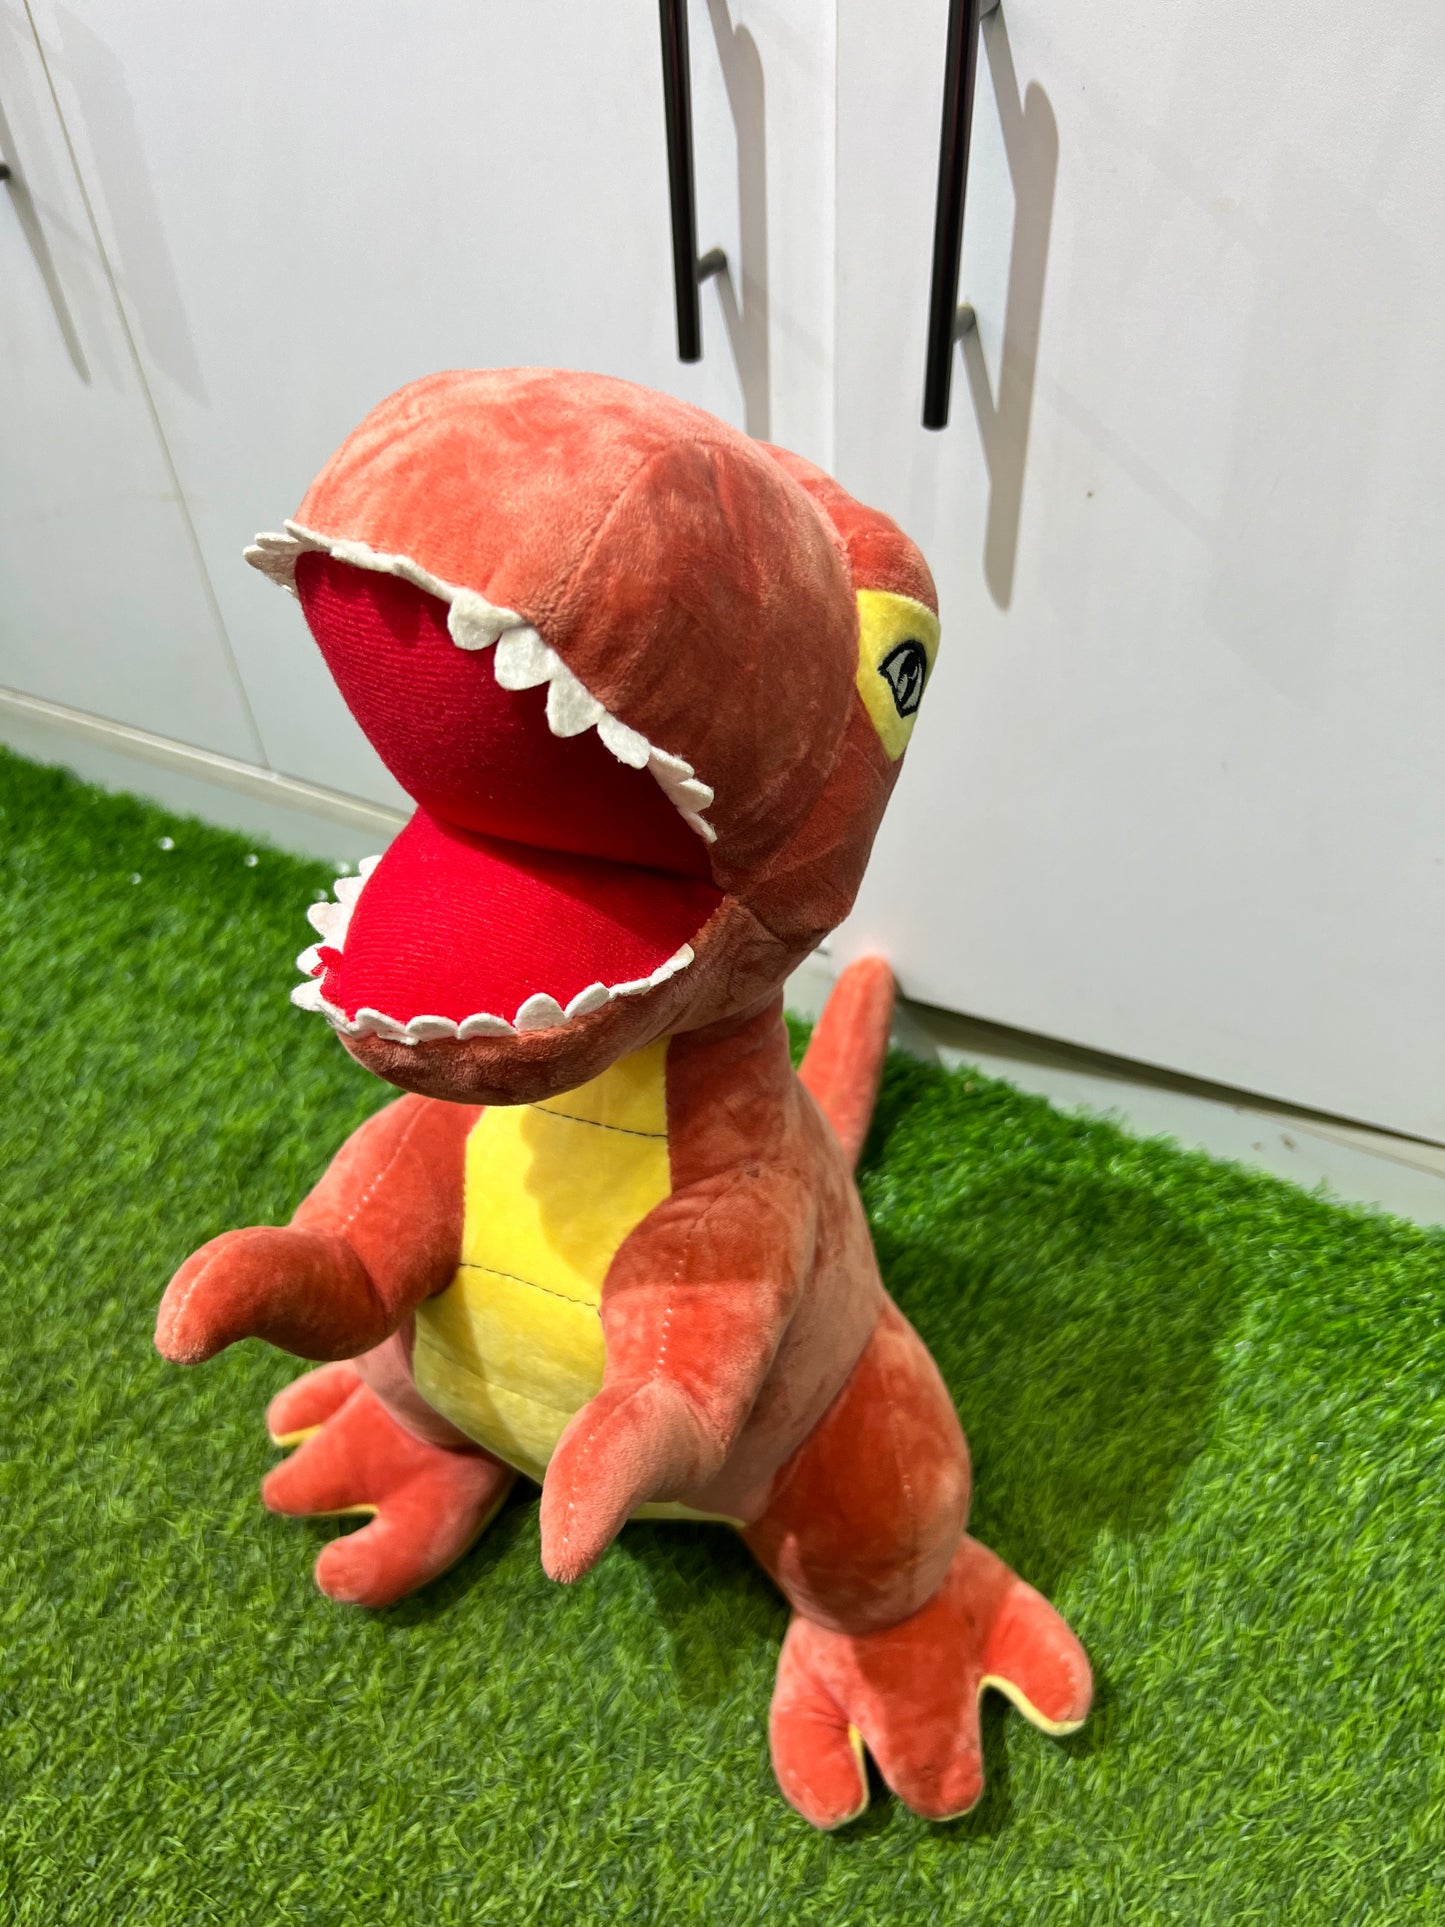 Plush dinosaur toy